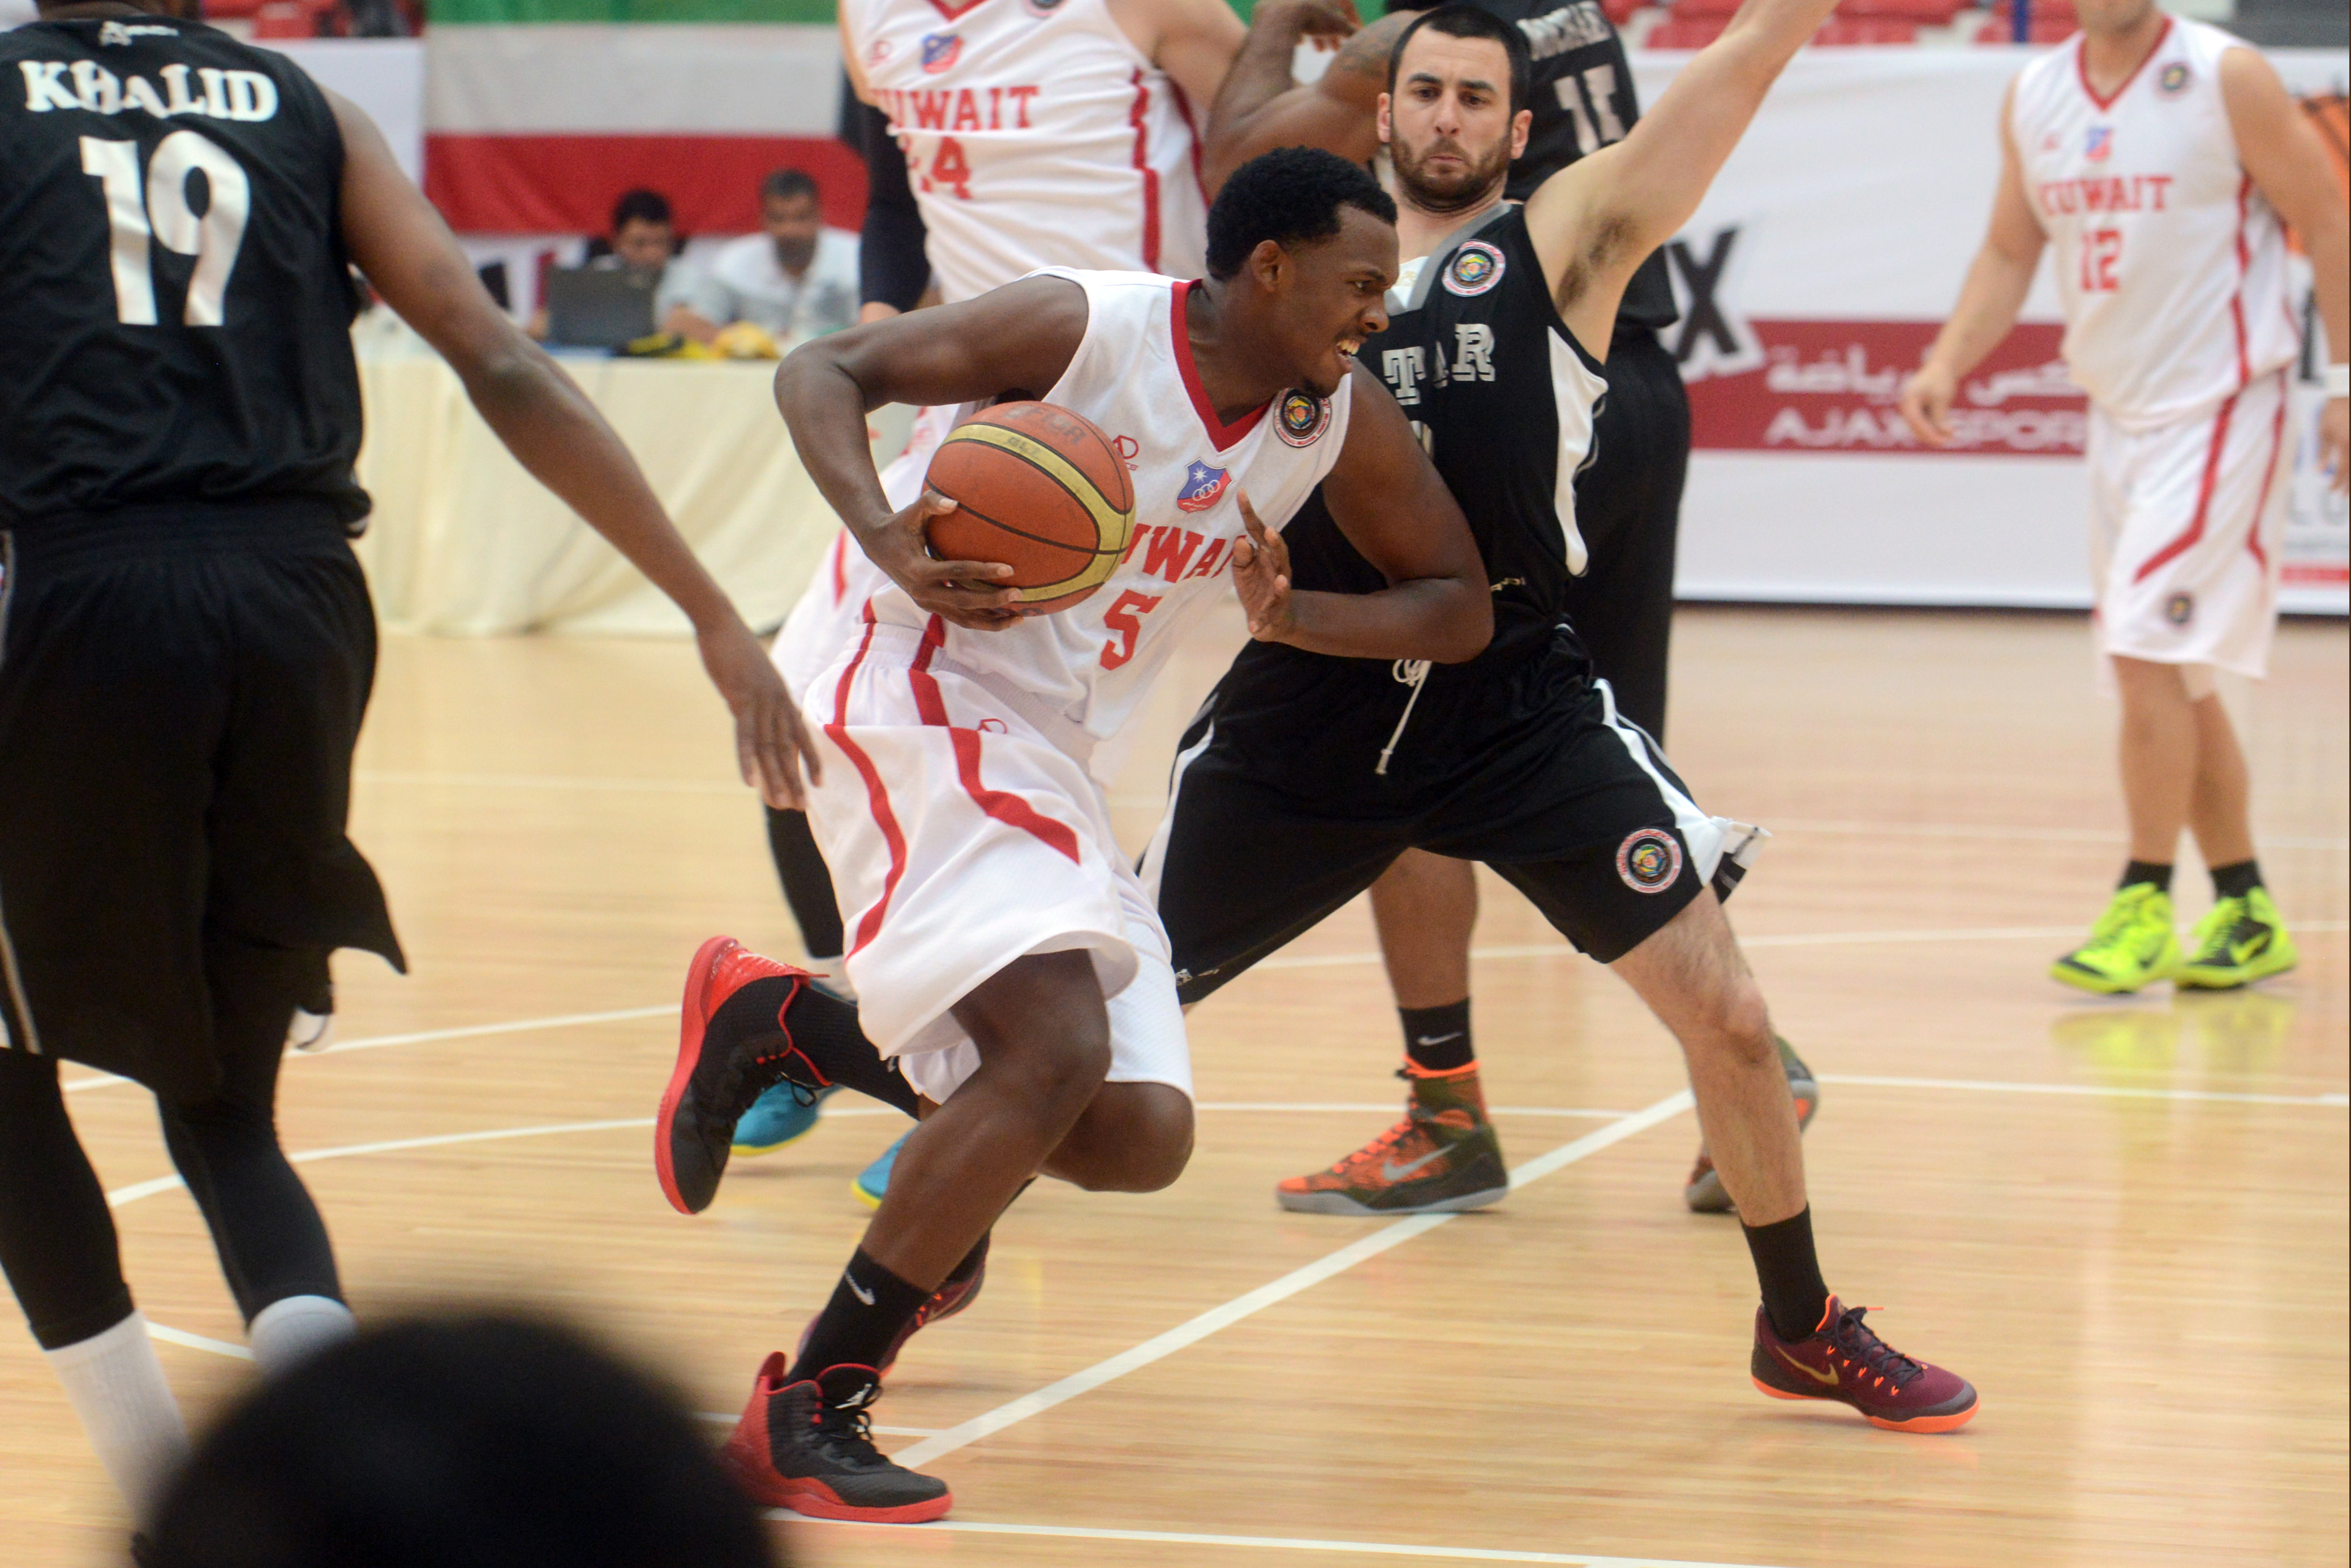 Kuwait SC beats Qatar's Al-Sadd 73-68 in GCC basketball tourney